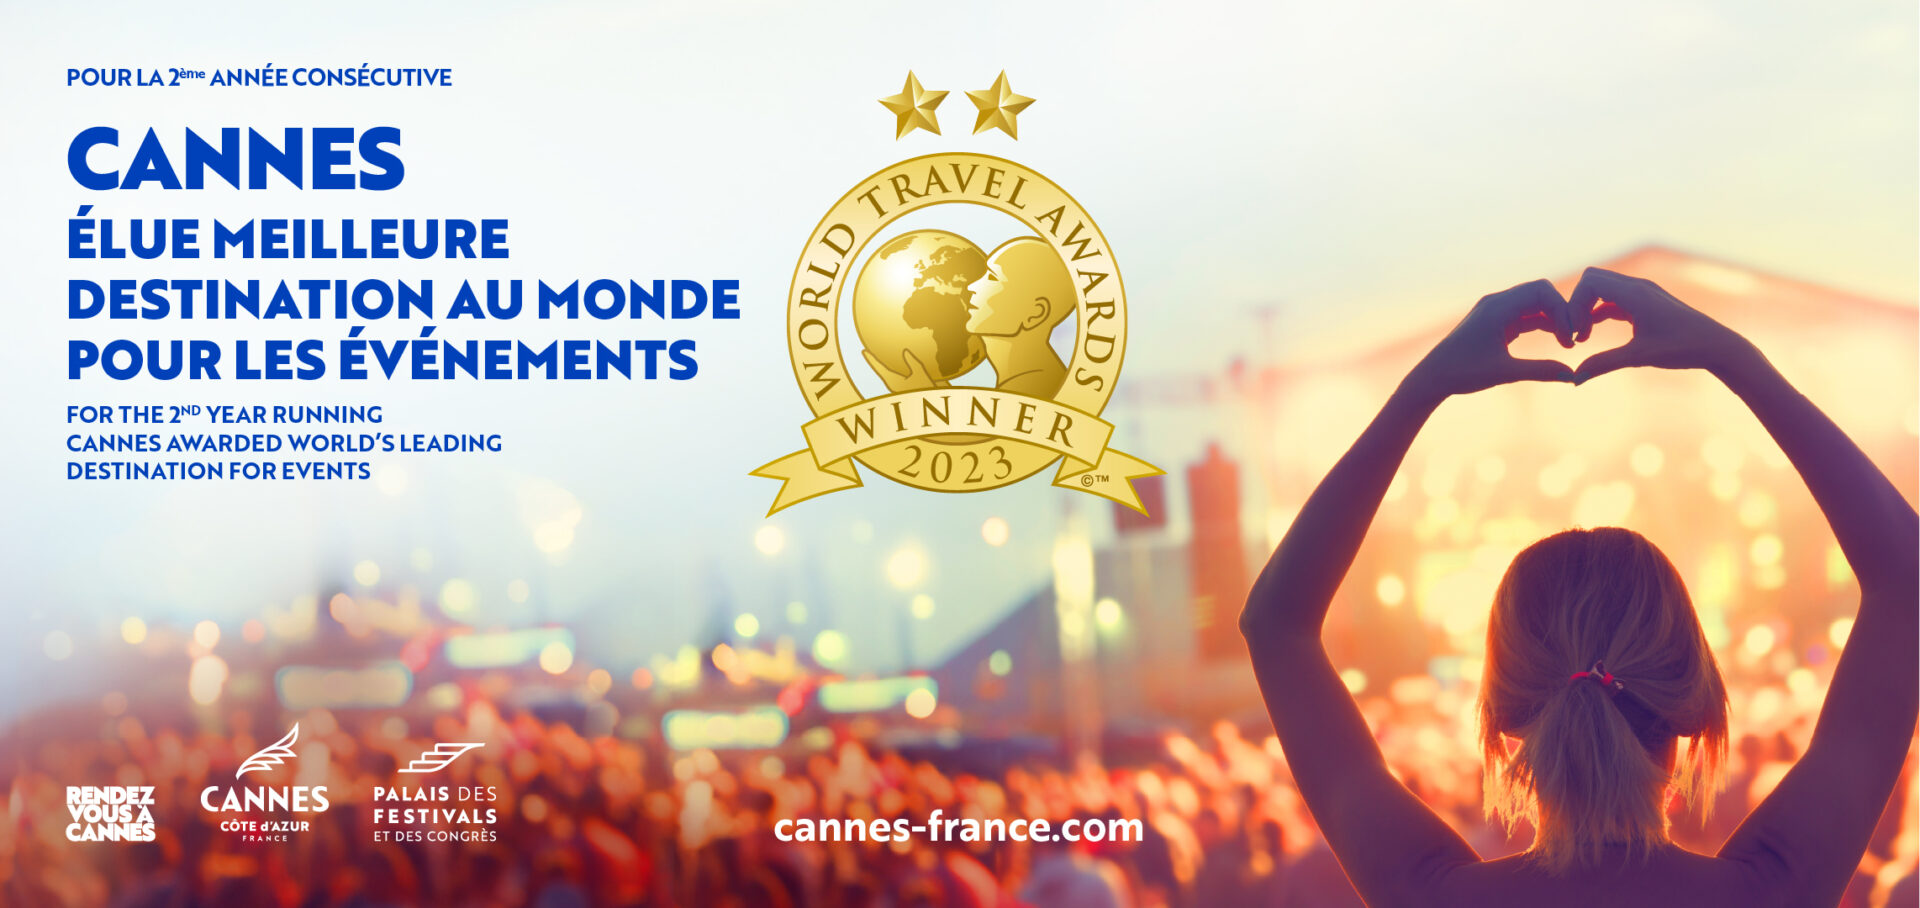 Cannes élue « meilleure destination au monde pour les Festivals et Événements » aux World Travel Awards 2023